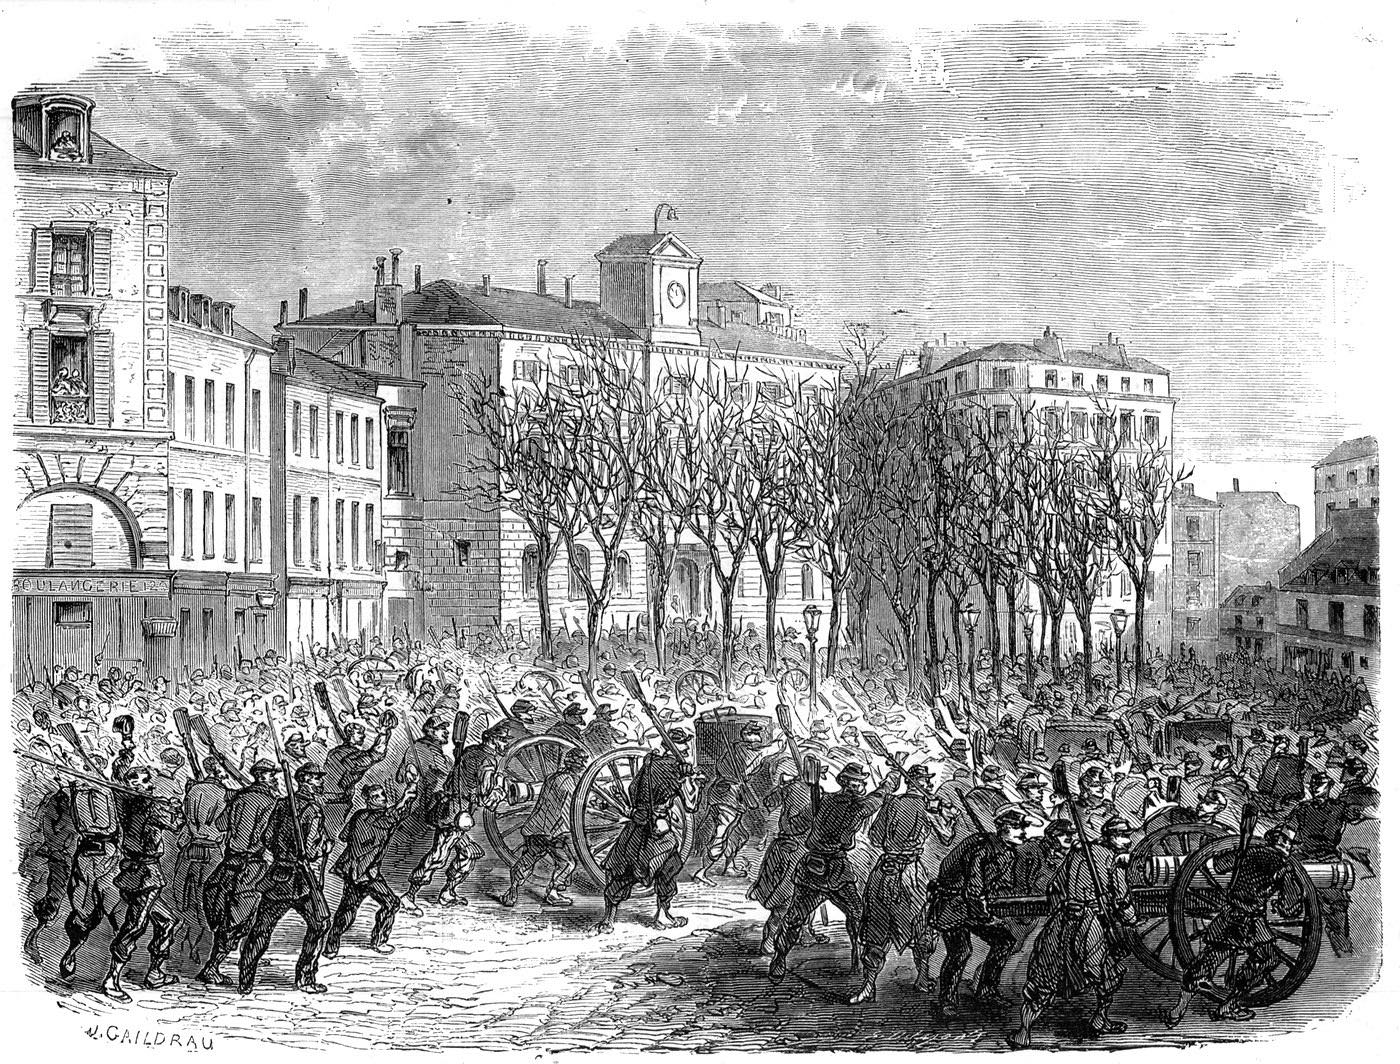 Arrivée des canons repris à l'armée devant la mairie du 18 e arrondissement, le 18 mars 1871 - Gravure de J. Gaildrau pour L'Illustration du 25 mars 1871.